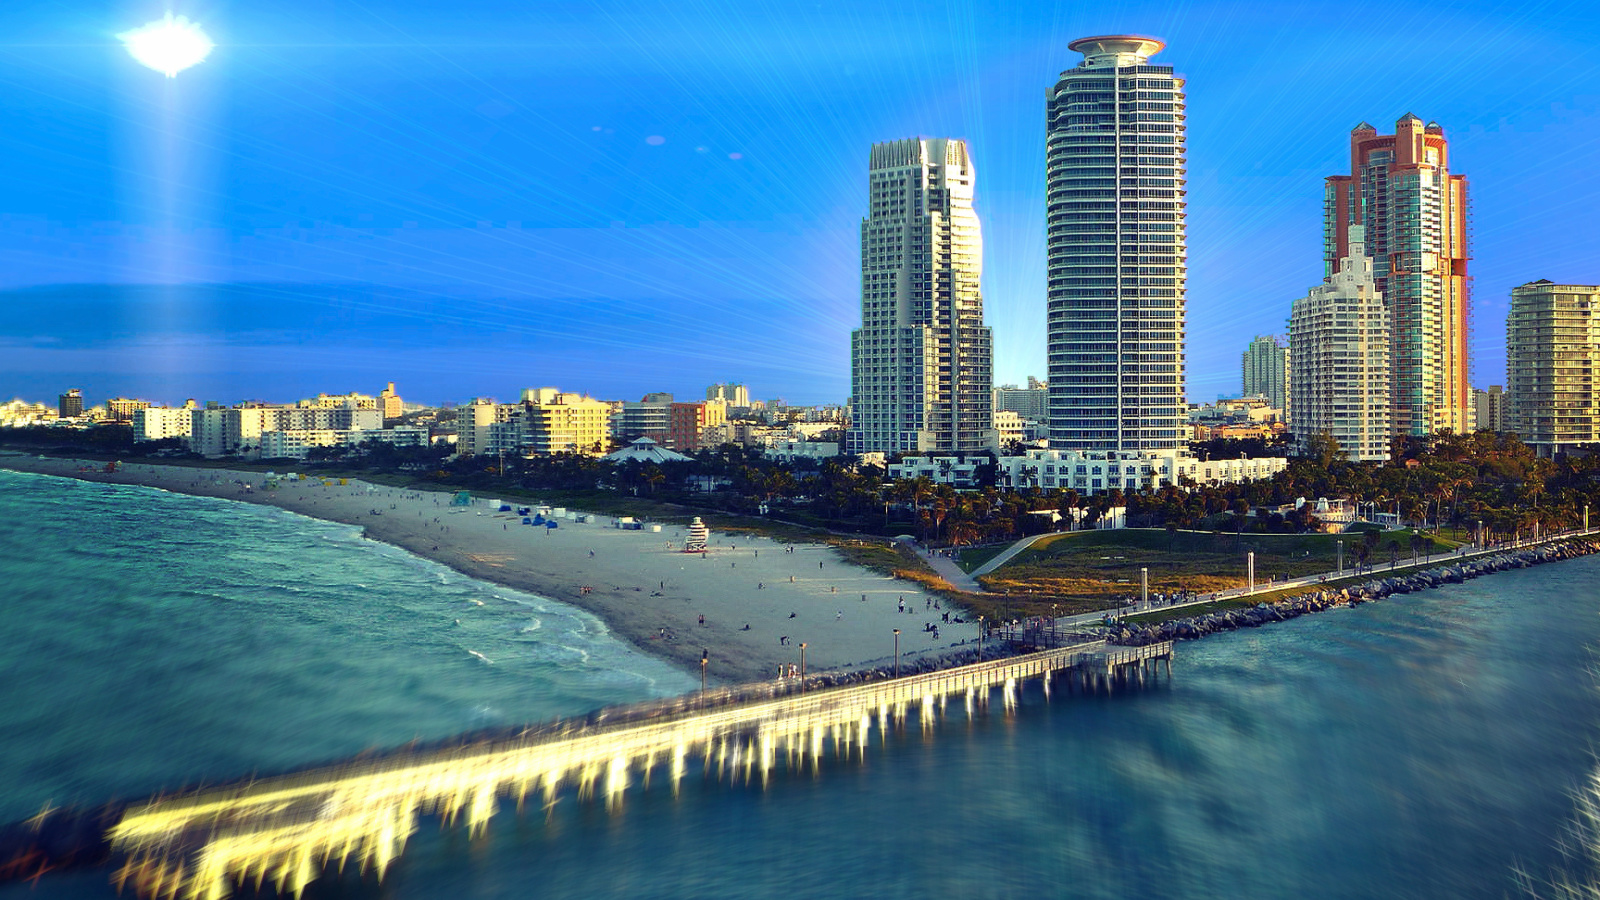 Обои Miami Beach with Hotels 1600x900